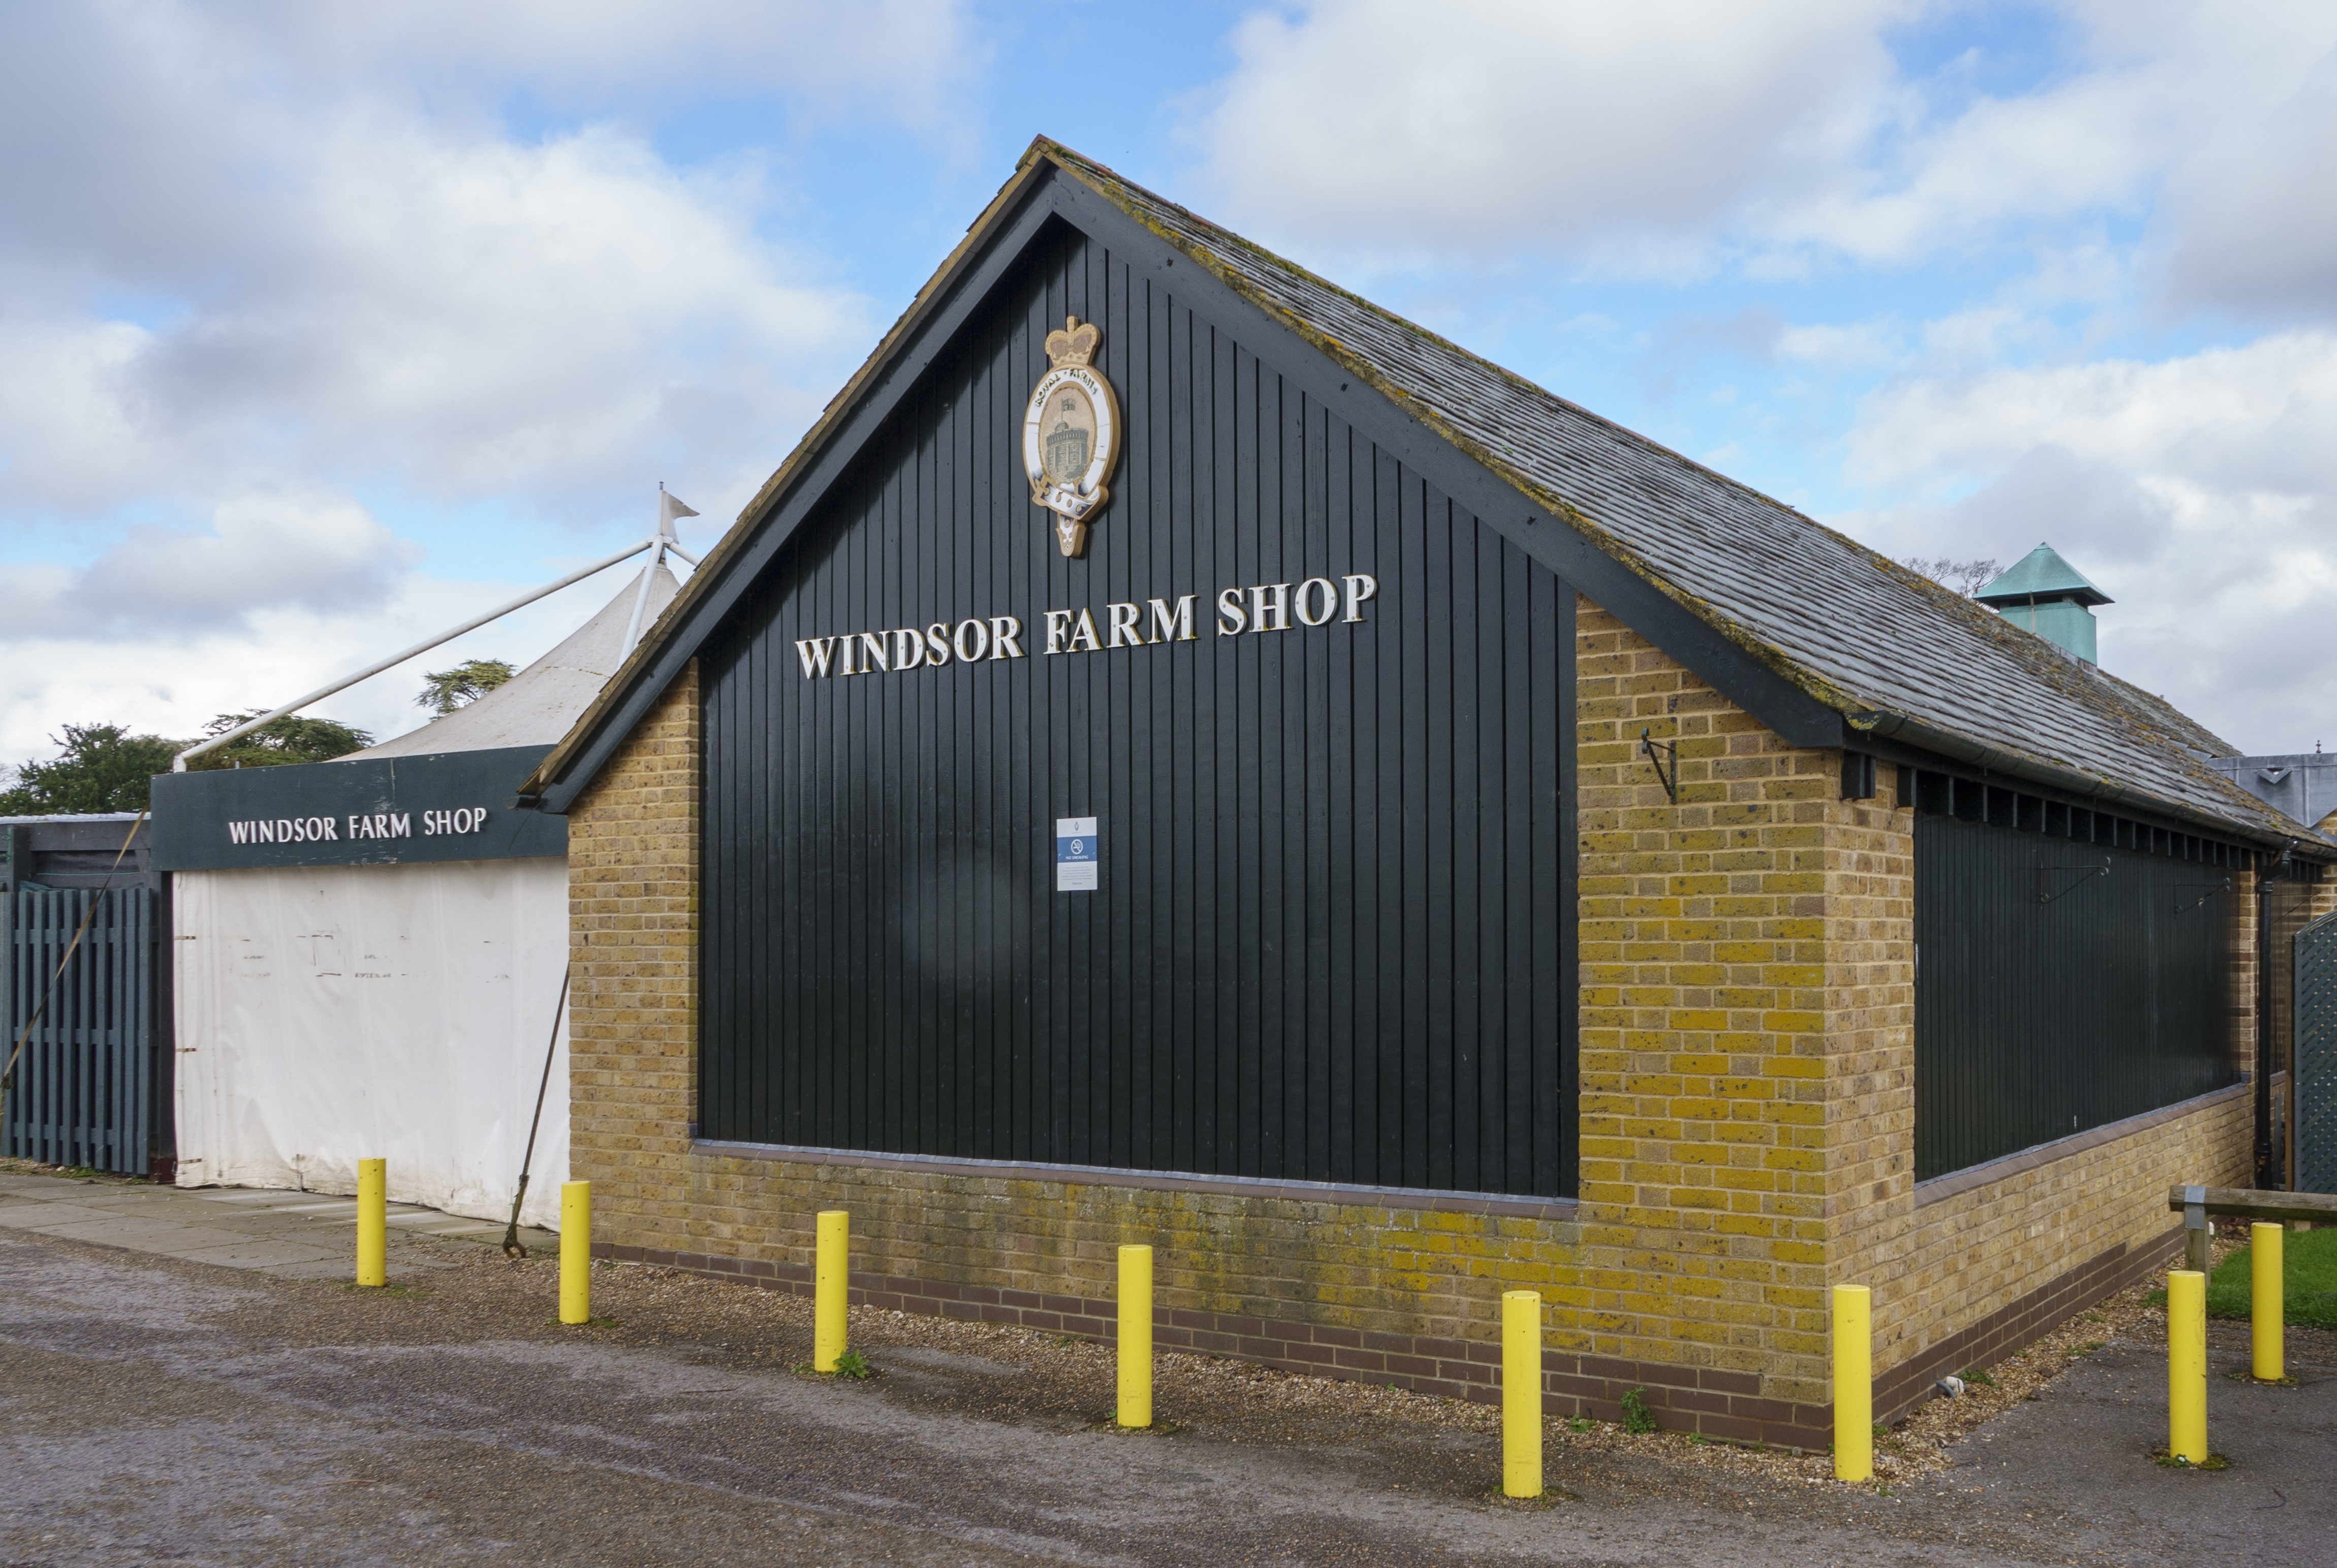 Der Royal Farms Windsor Shop liegt nur einen kurzen Spaziergang von Kates Zuhause entfernt